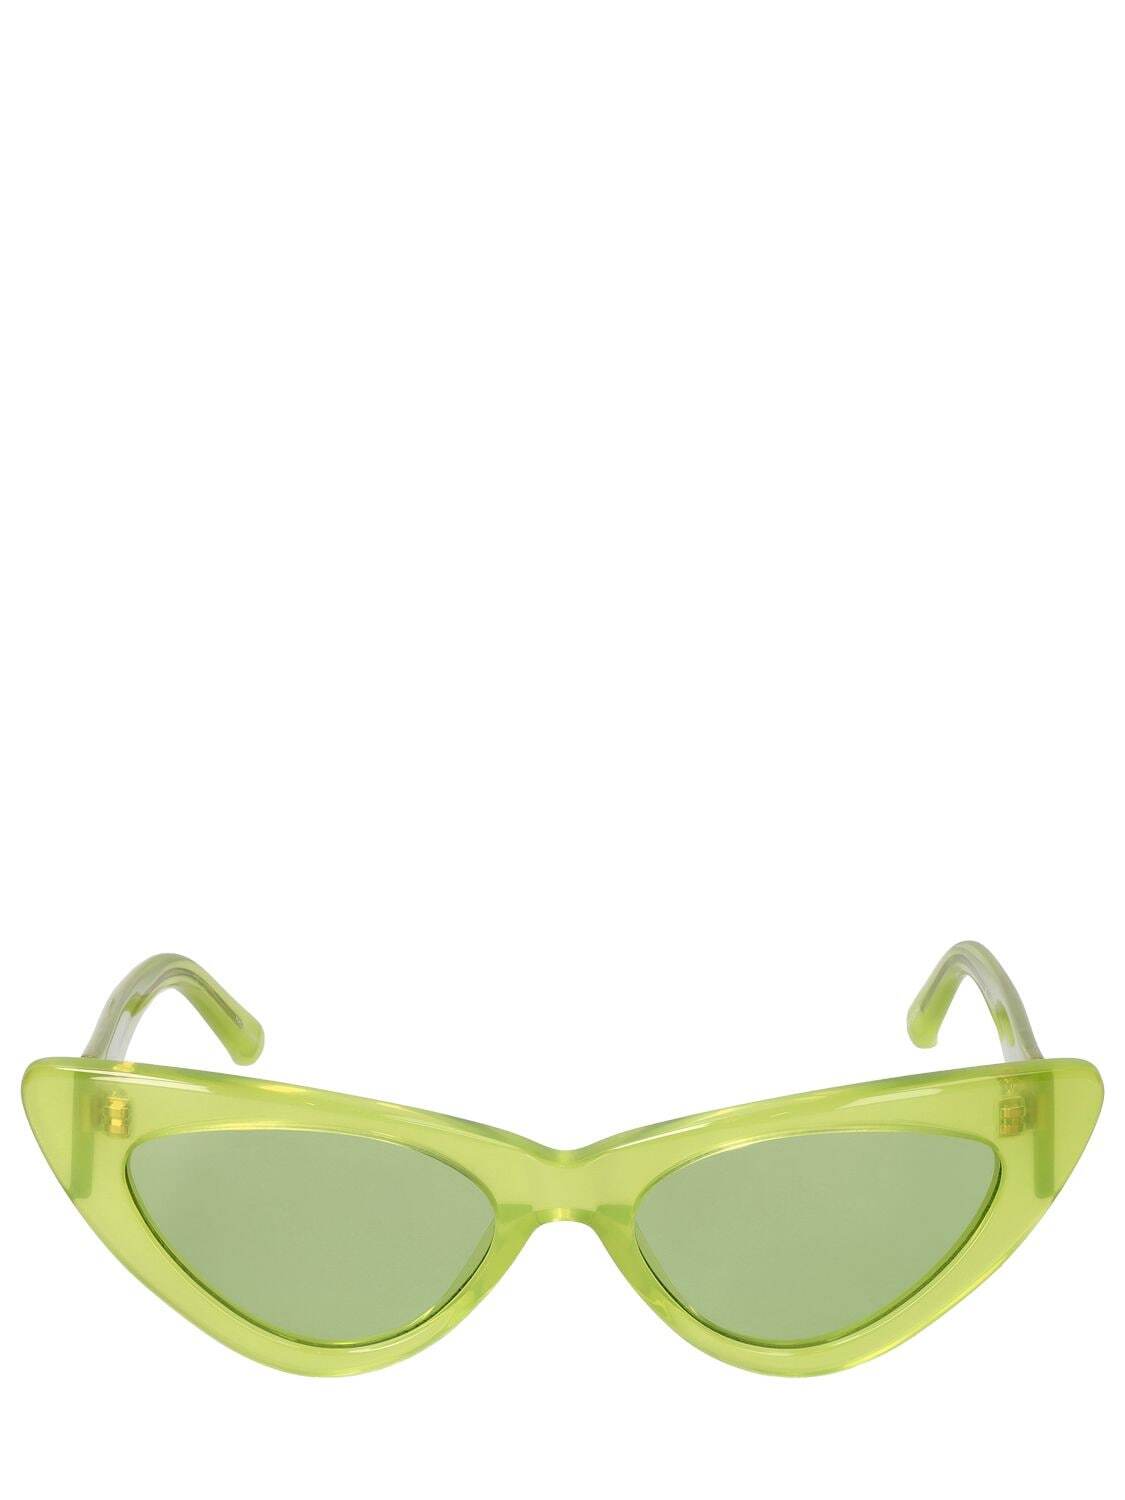 THE ATTICO Dora Cat-eye Acetate Sunglasses in green